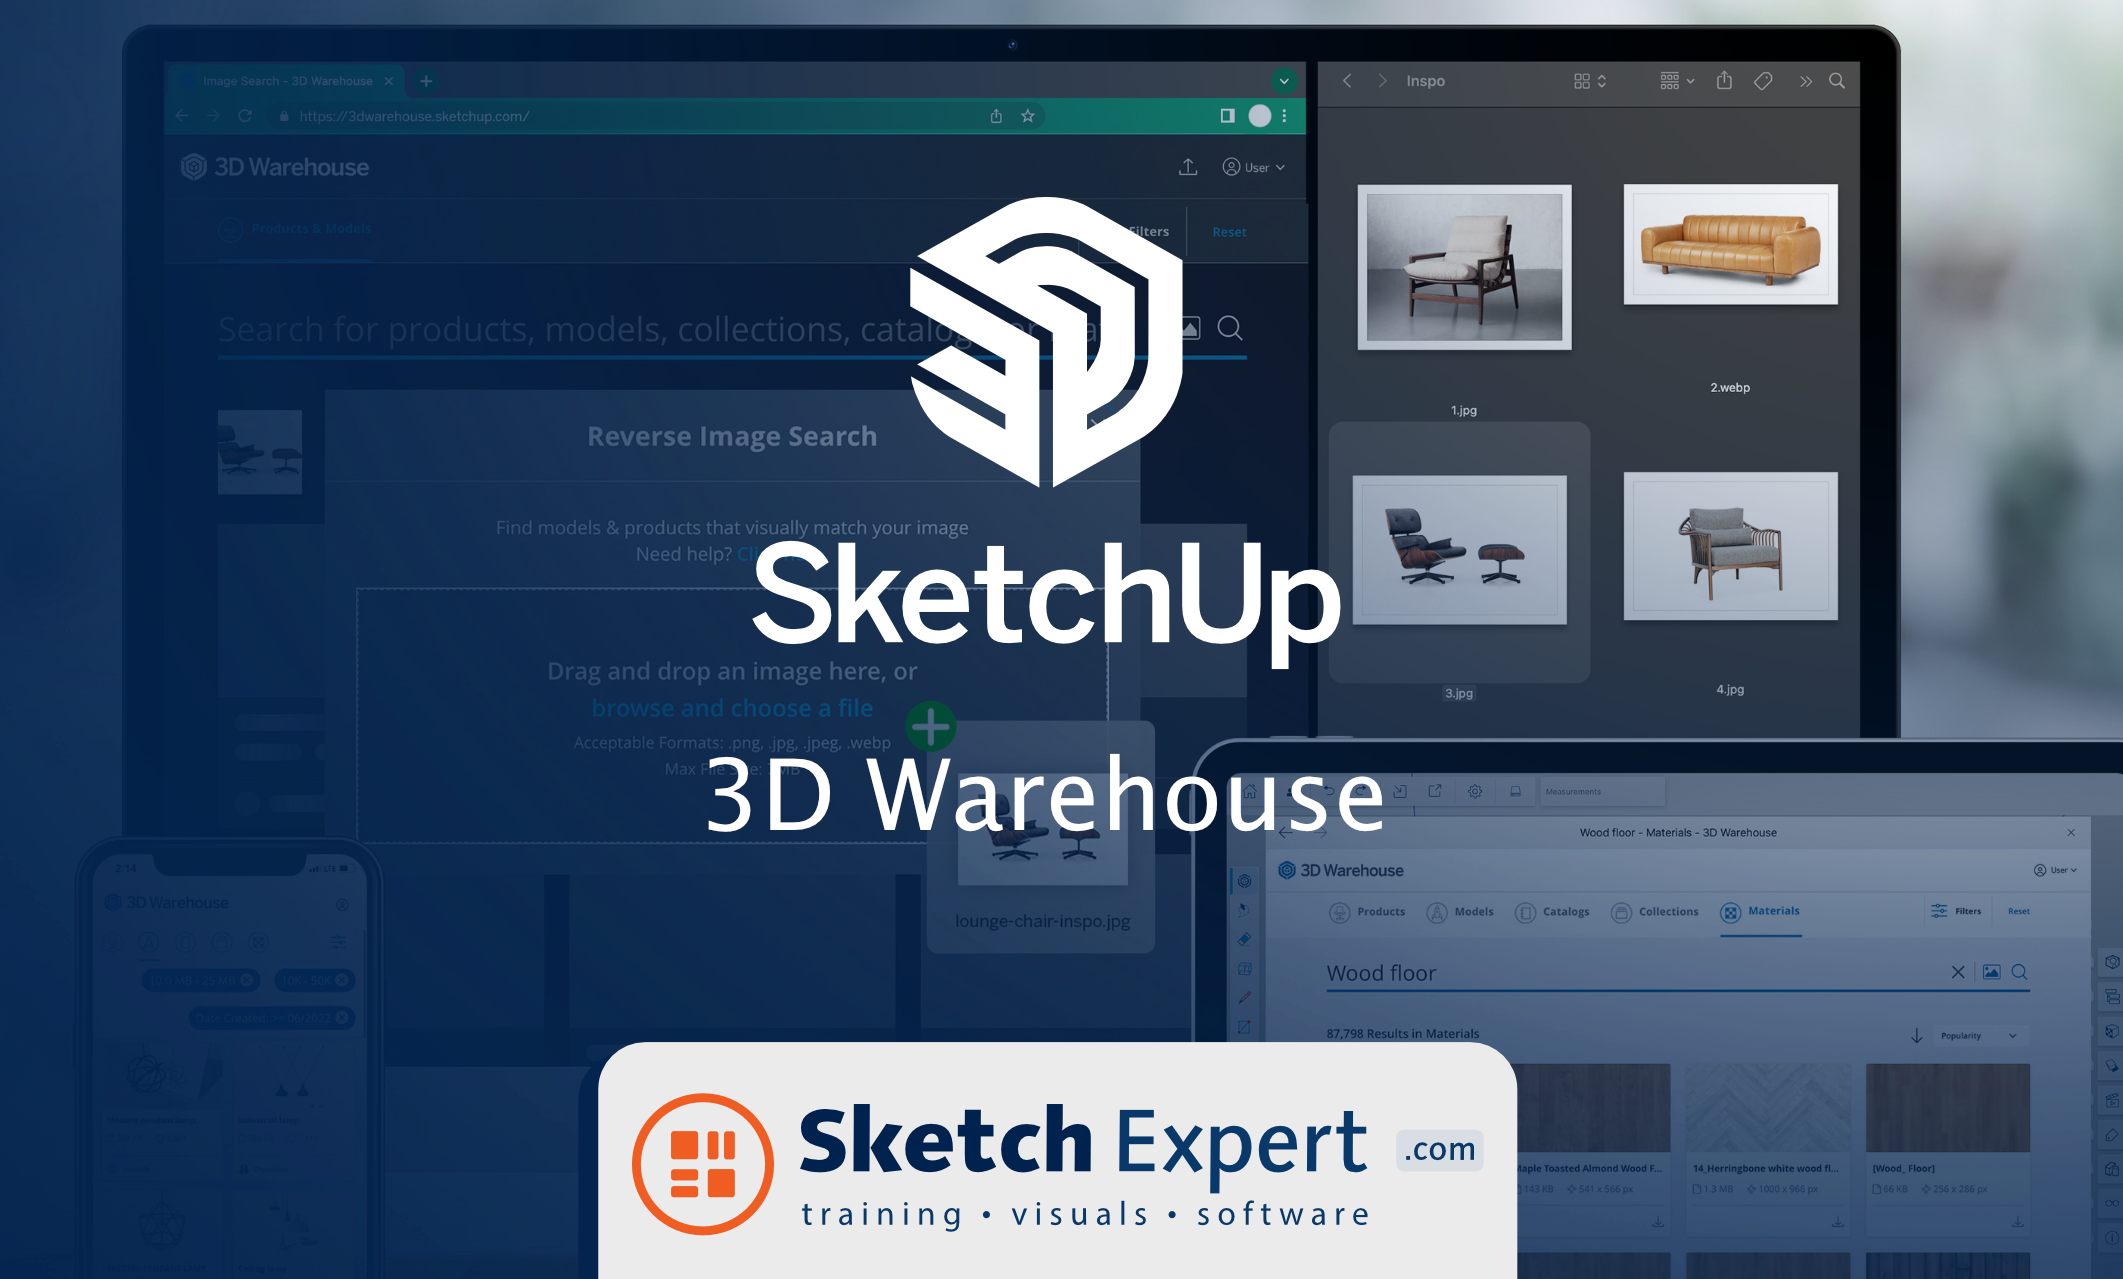 Hoe werkt SketchUp 3D Warehouse